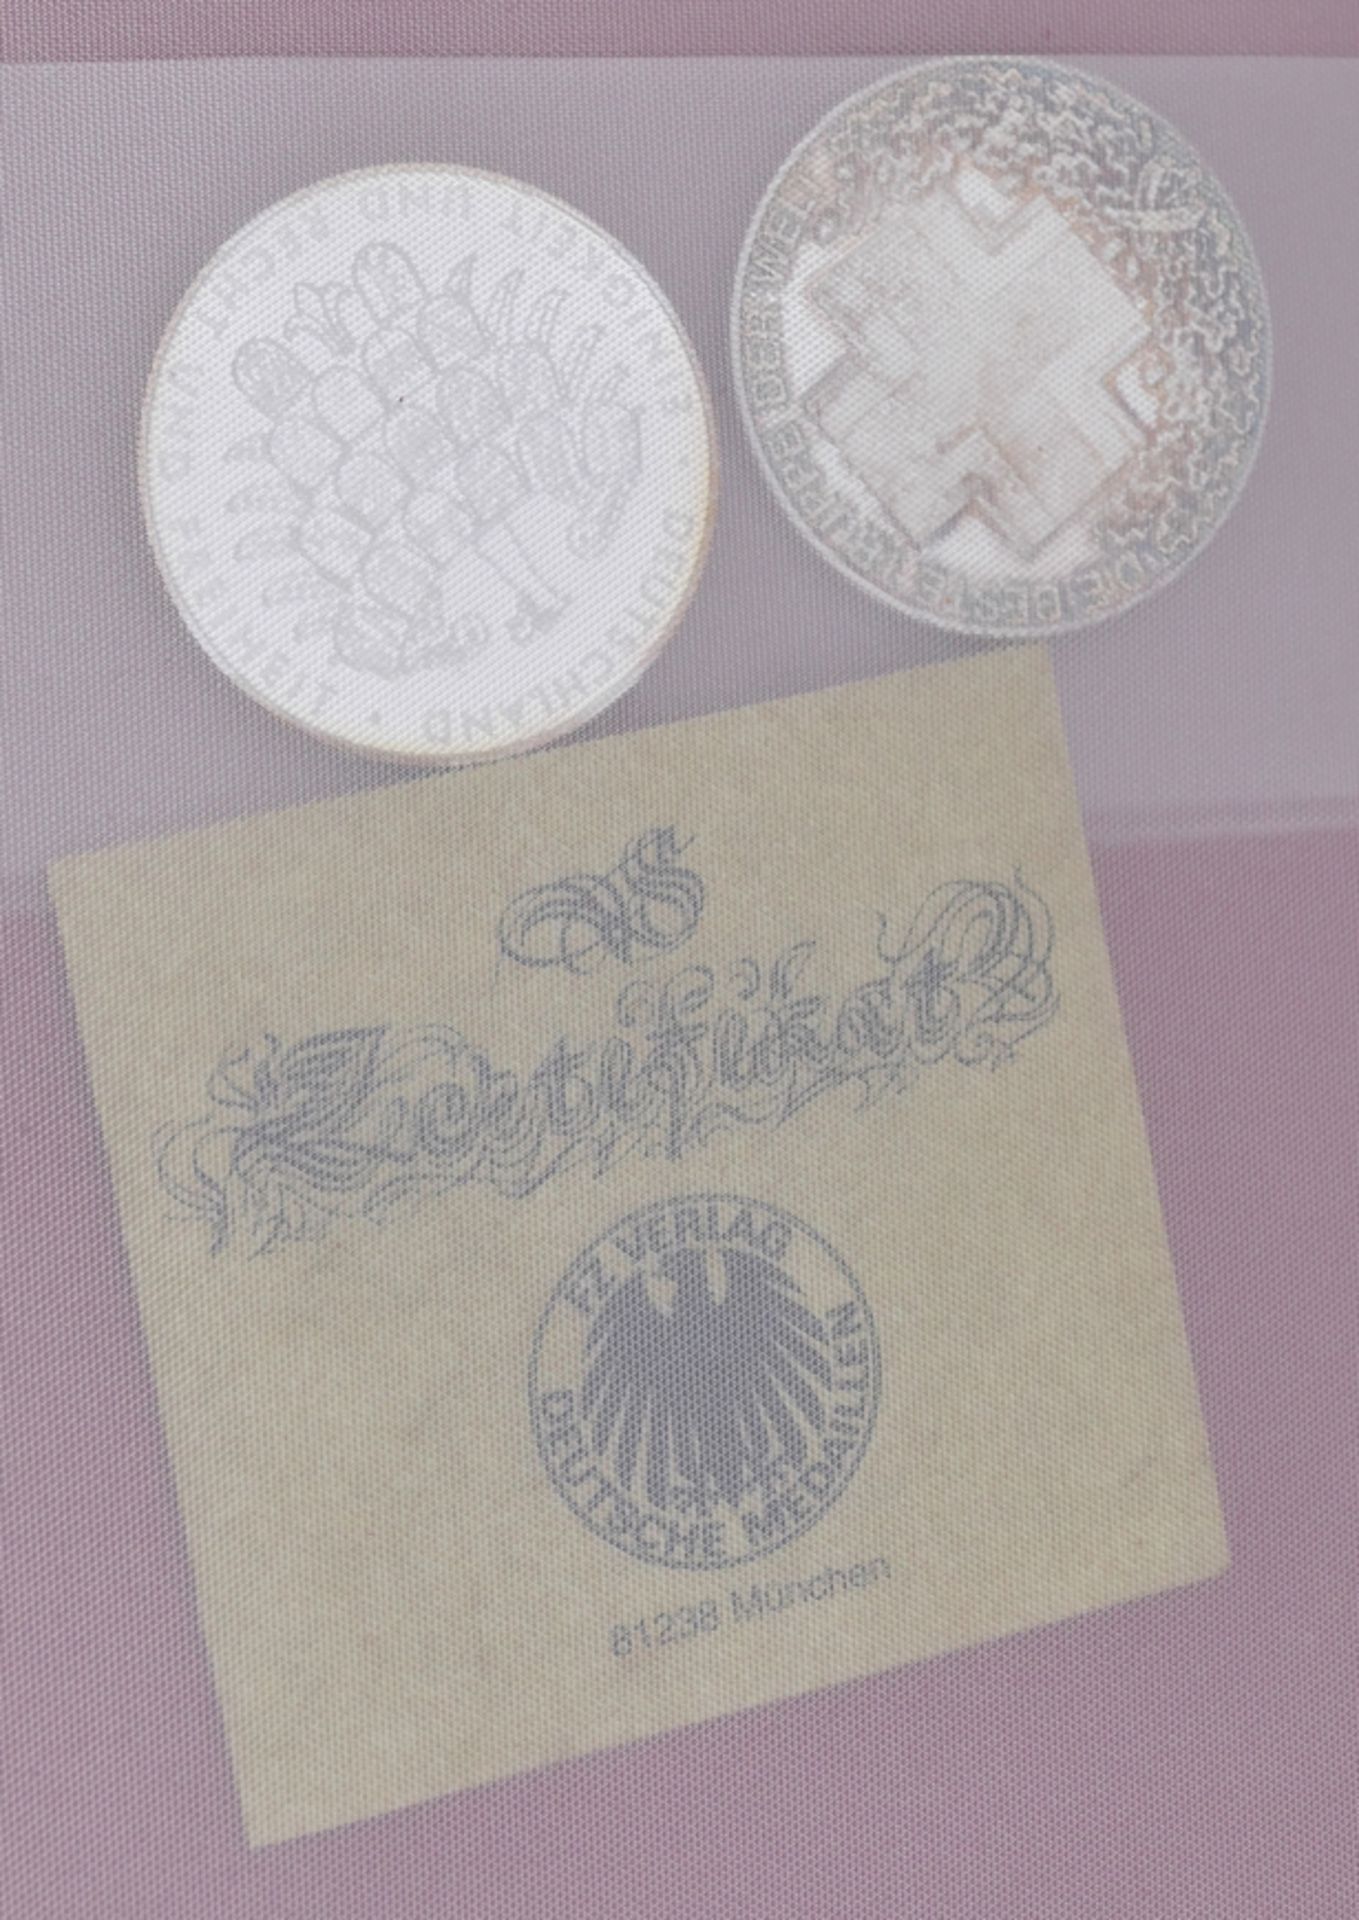 1 Konv. Münzen/Medaillen: 3x GG z.B. Österreich, Dt. Reich und USA, Silber/Metall u.a., z.B. Österre - Image 4 of 4